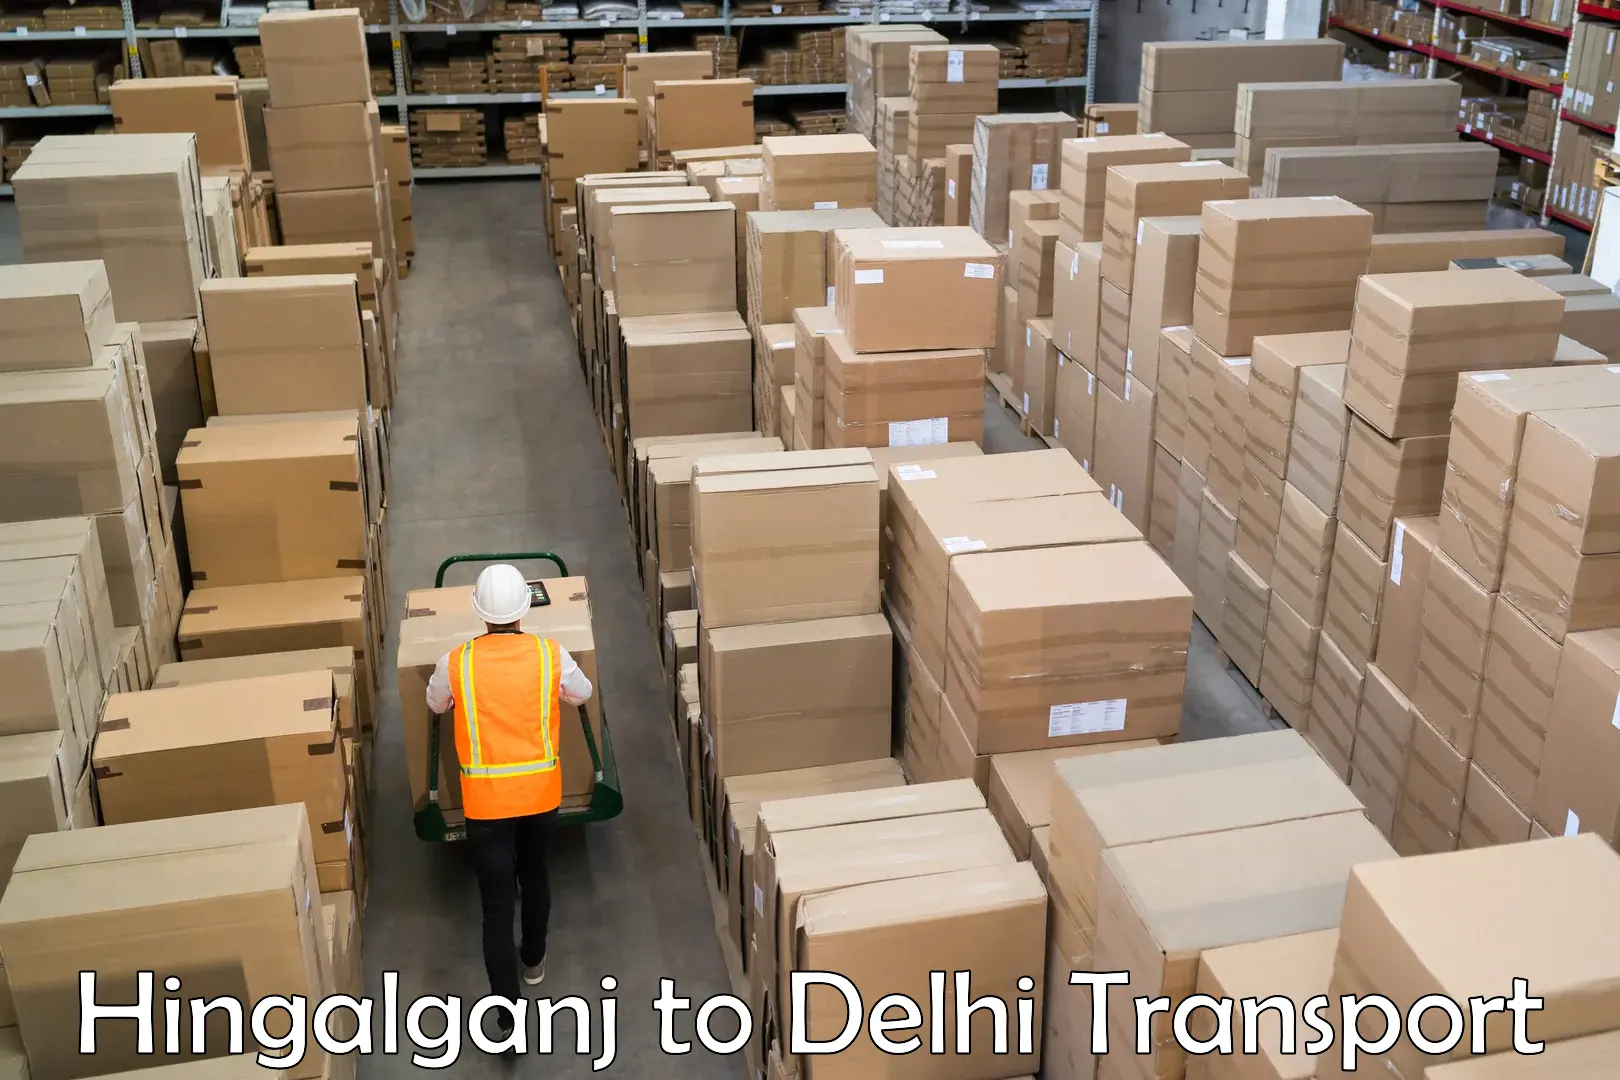 Daily transport service Hingalganj to NCR